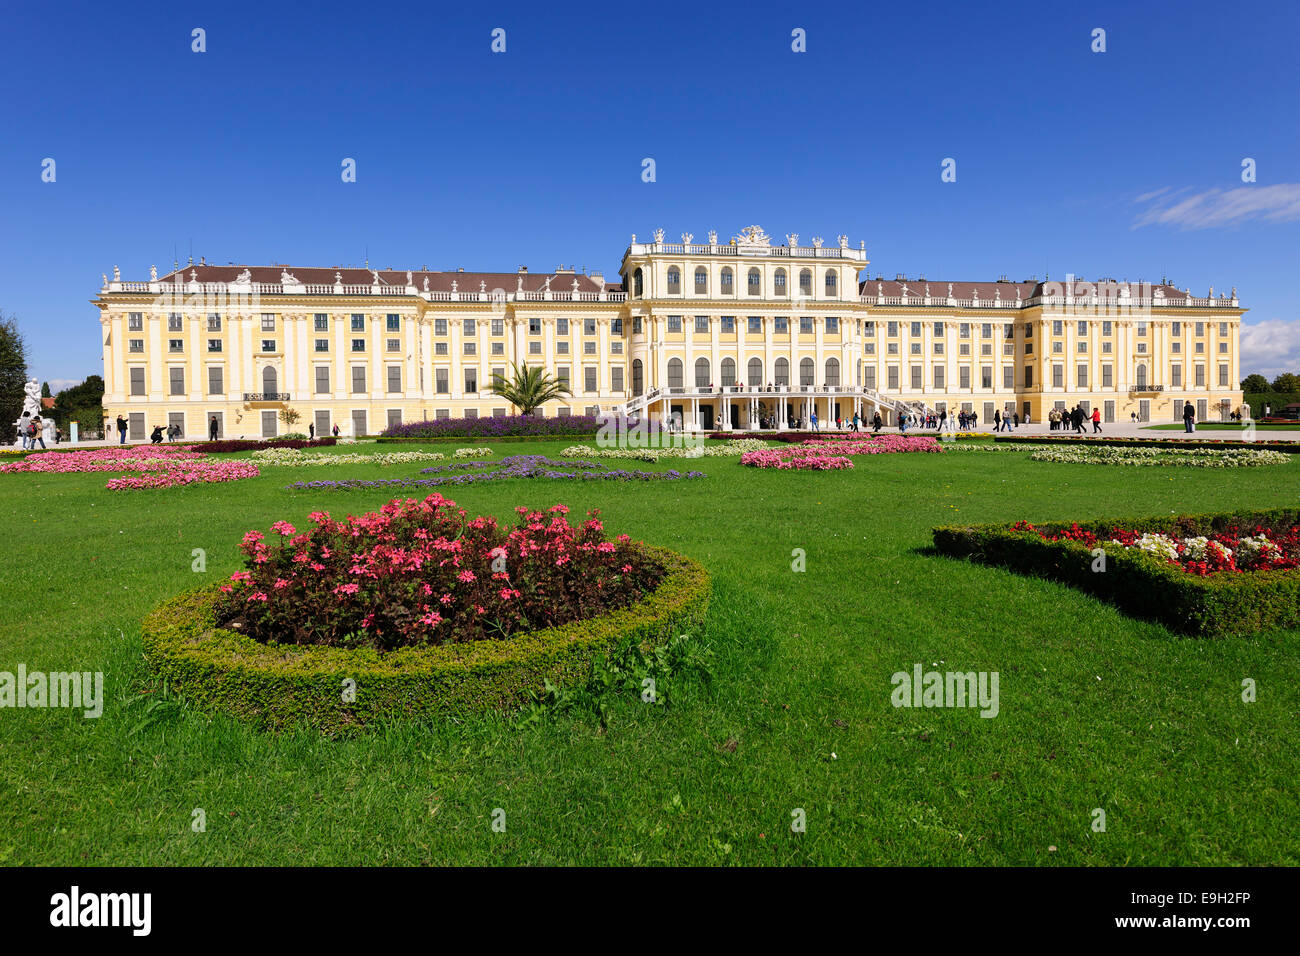 Schloss Schoenbrunn Palace, Vienna, Austria Stock Photo